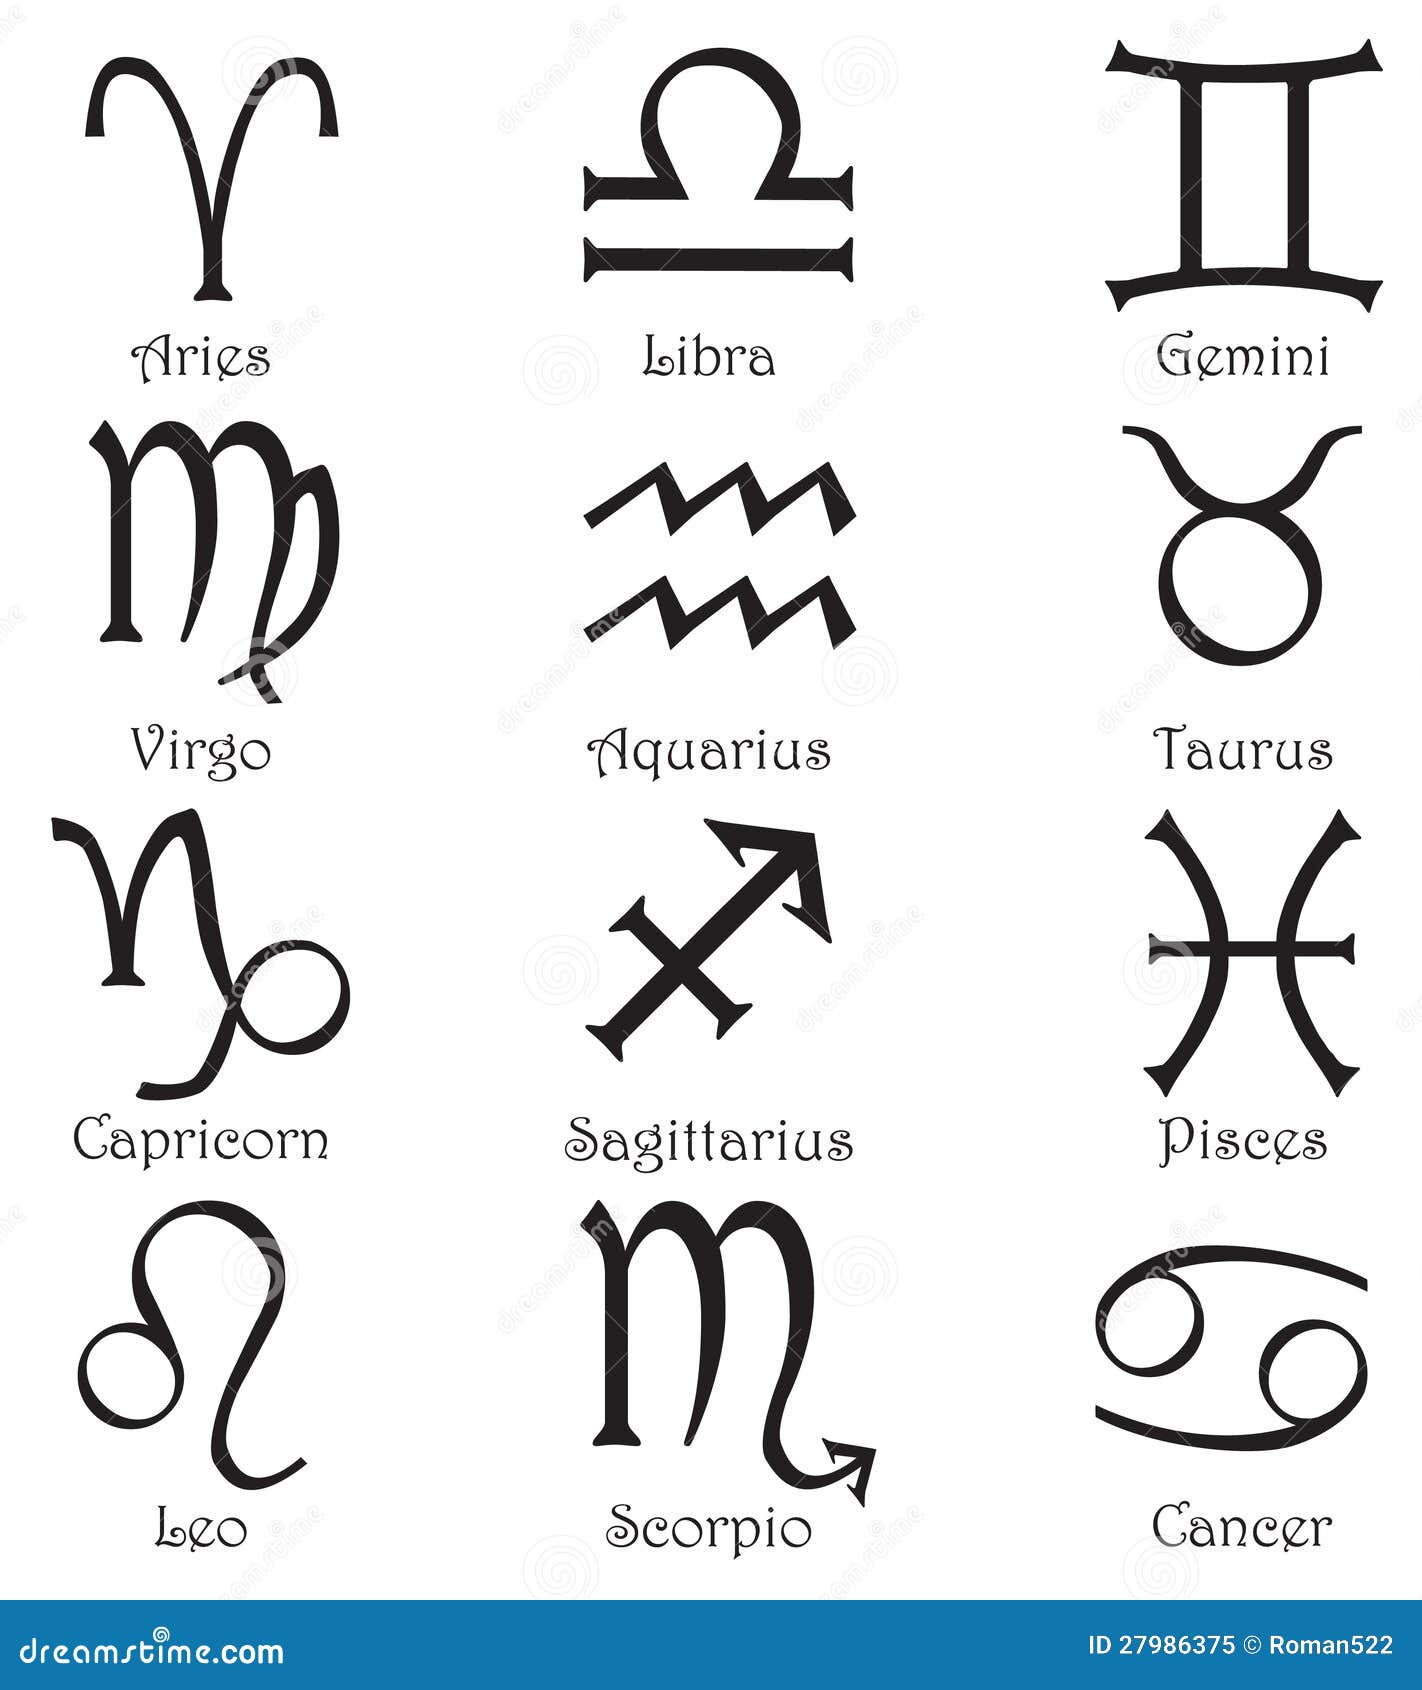 Как выглядят знаки зодиака символы. Символы зодиака. Знаки зодиака значки. Пиктограммы знаков зодиака. Значки изображающие знаки зодиака.